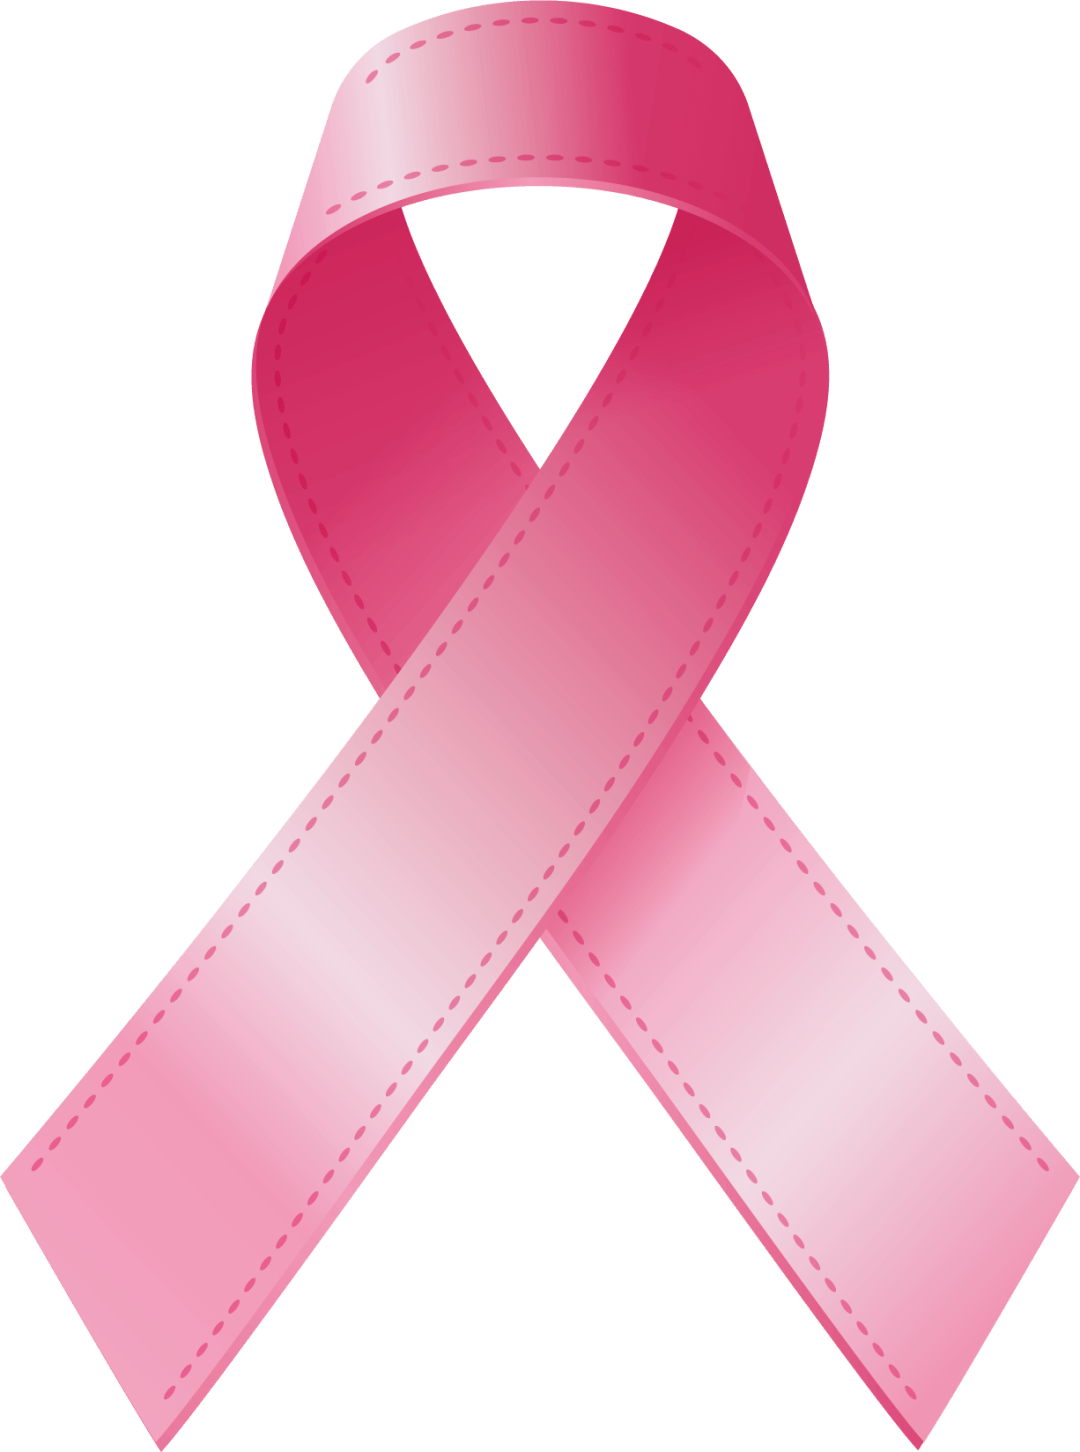 外广场2021年10月24日08:00—16:00粉红丝带是一场关爱乳房的运动